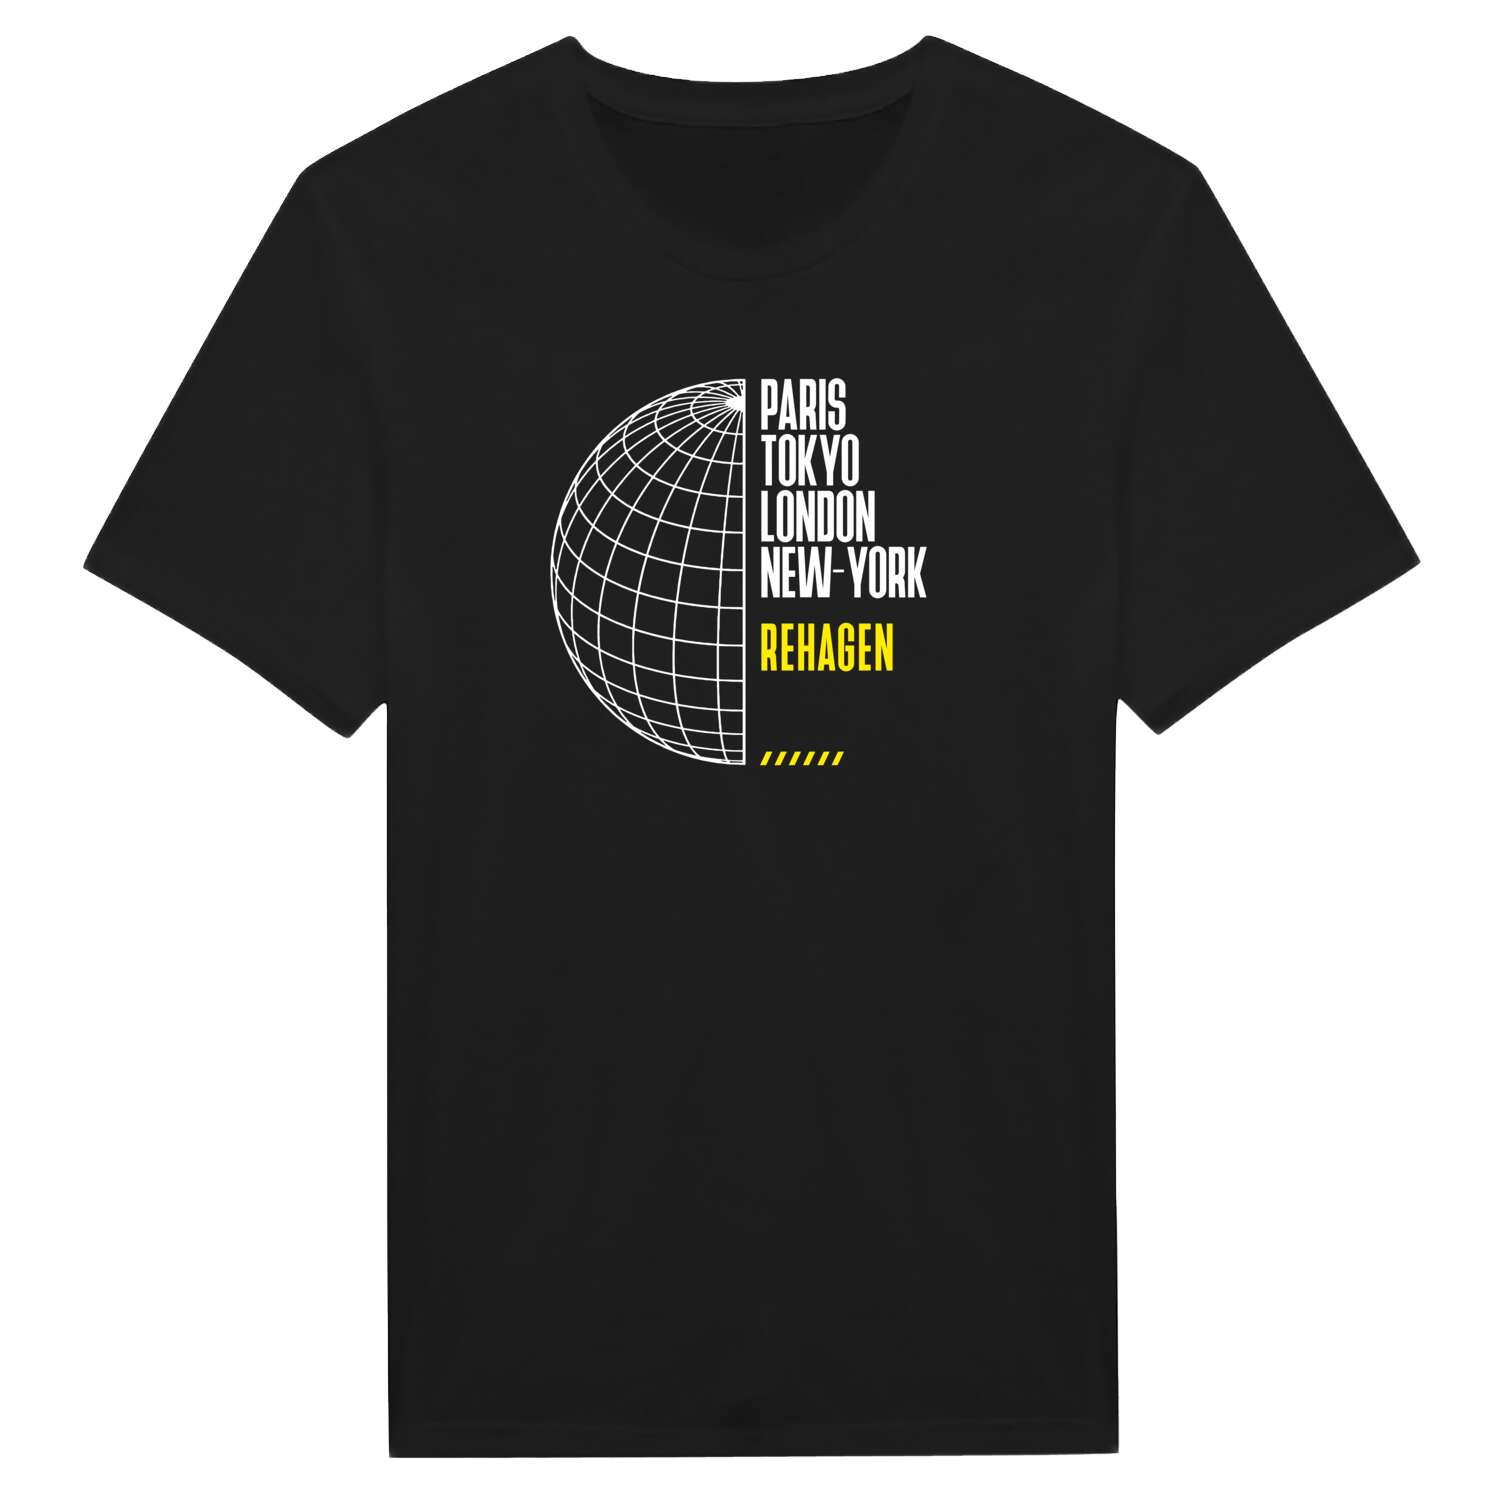 Rehagen T-Shirt »Paris Tokyo London«